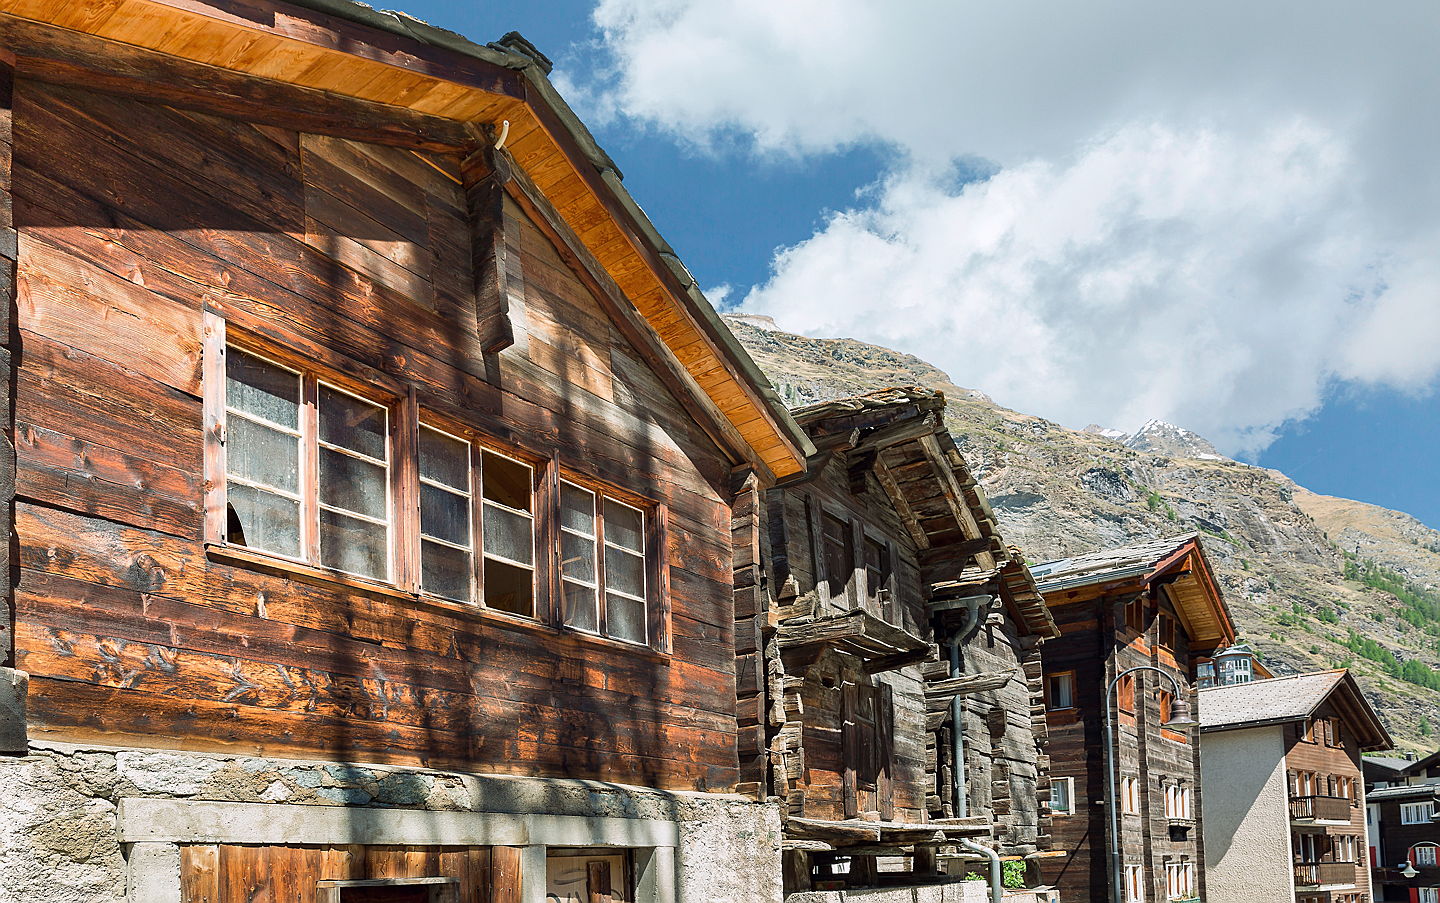  Sursee
- Chalet in Zermatt